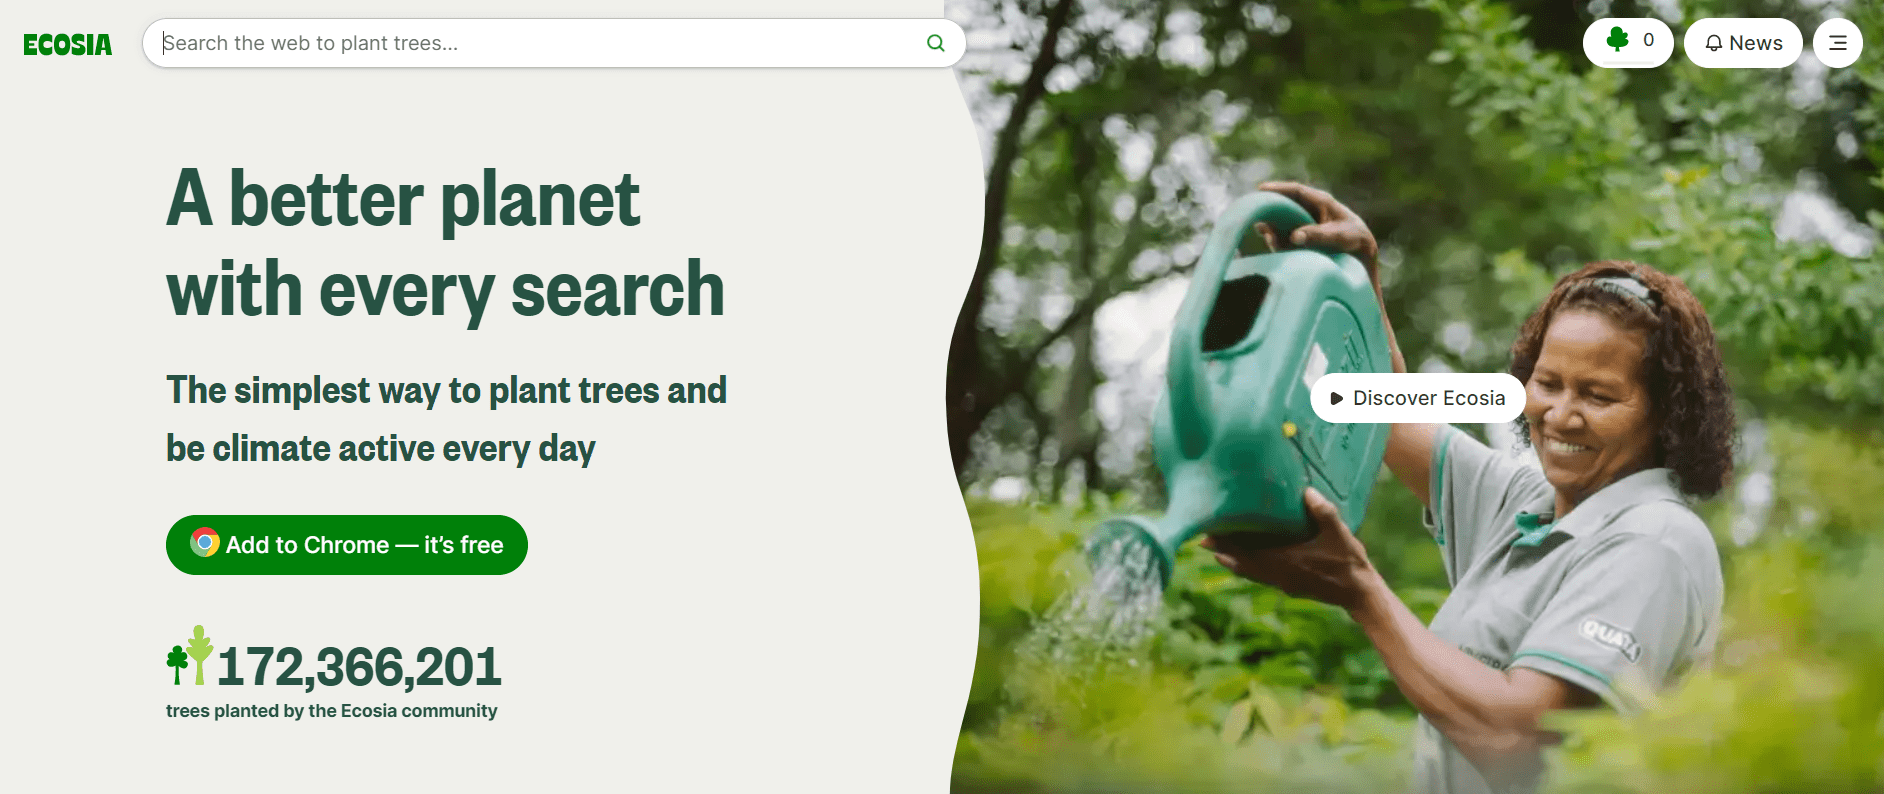 Каждый запрос в экологичном поисковике равен одному посаженному дереву